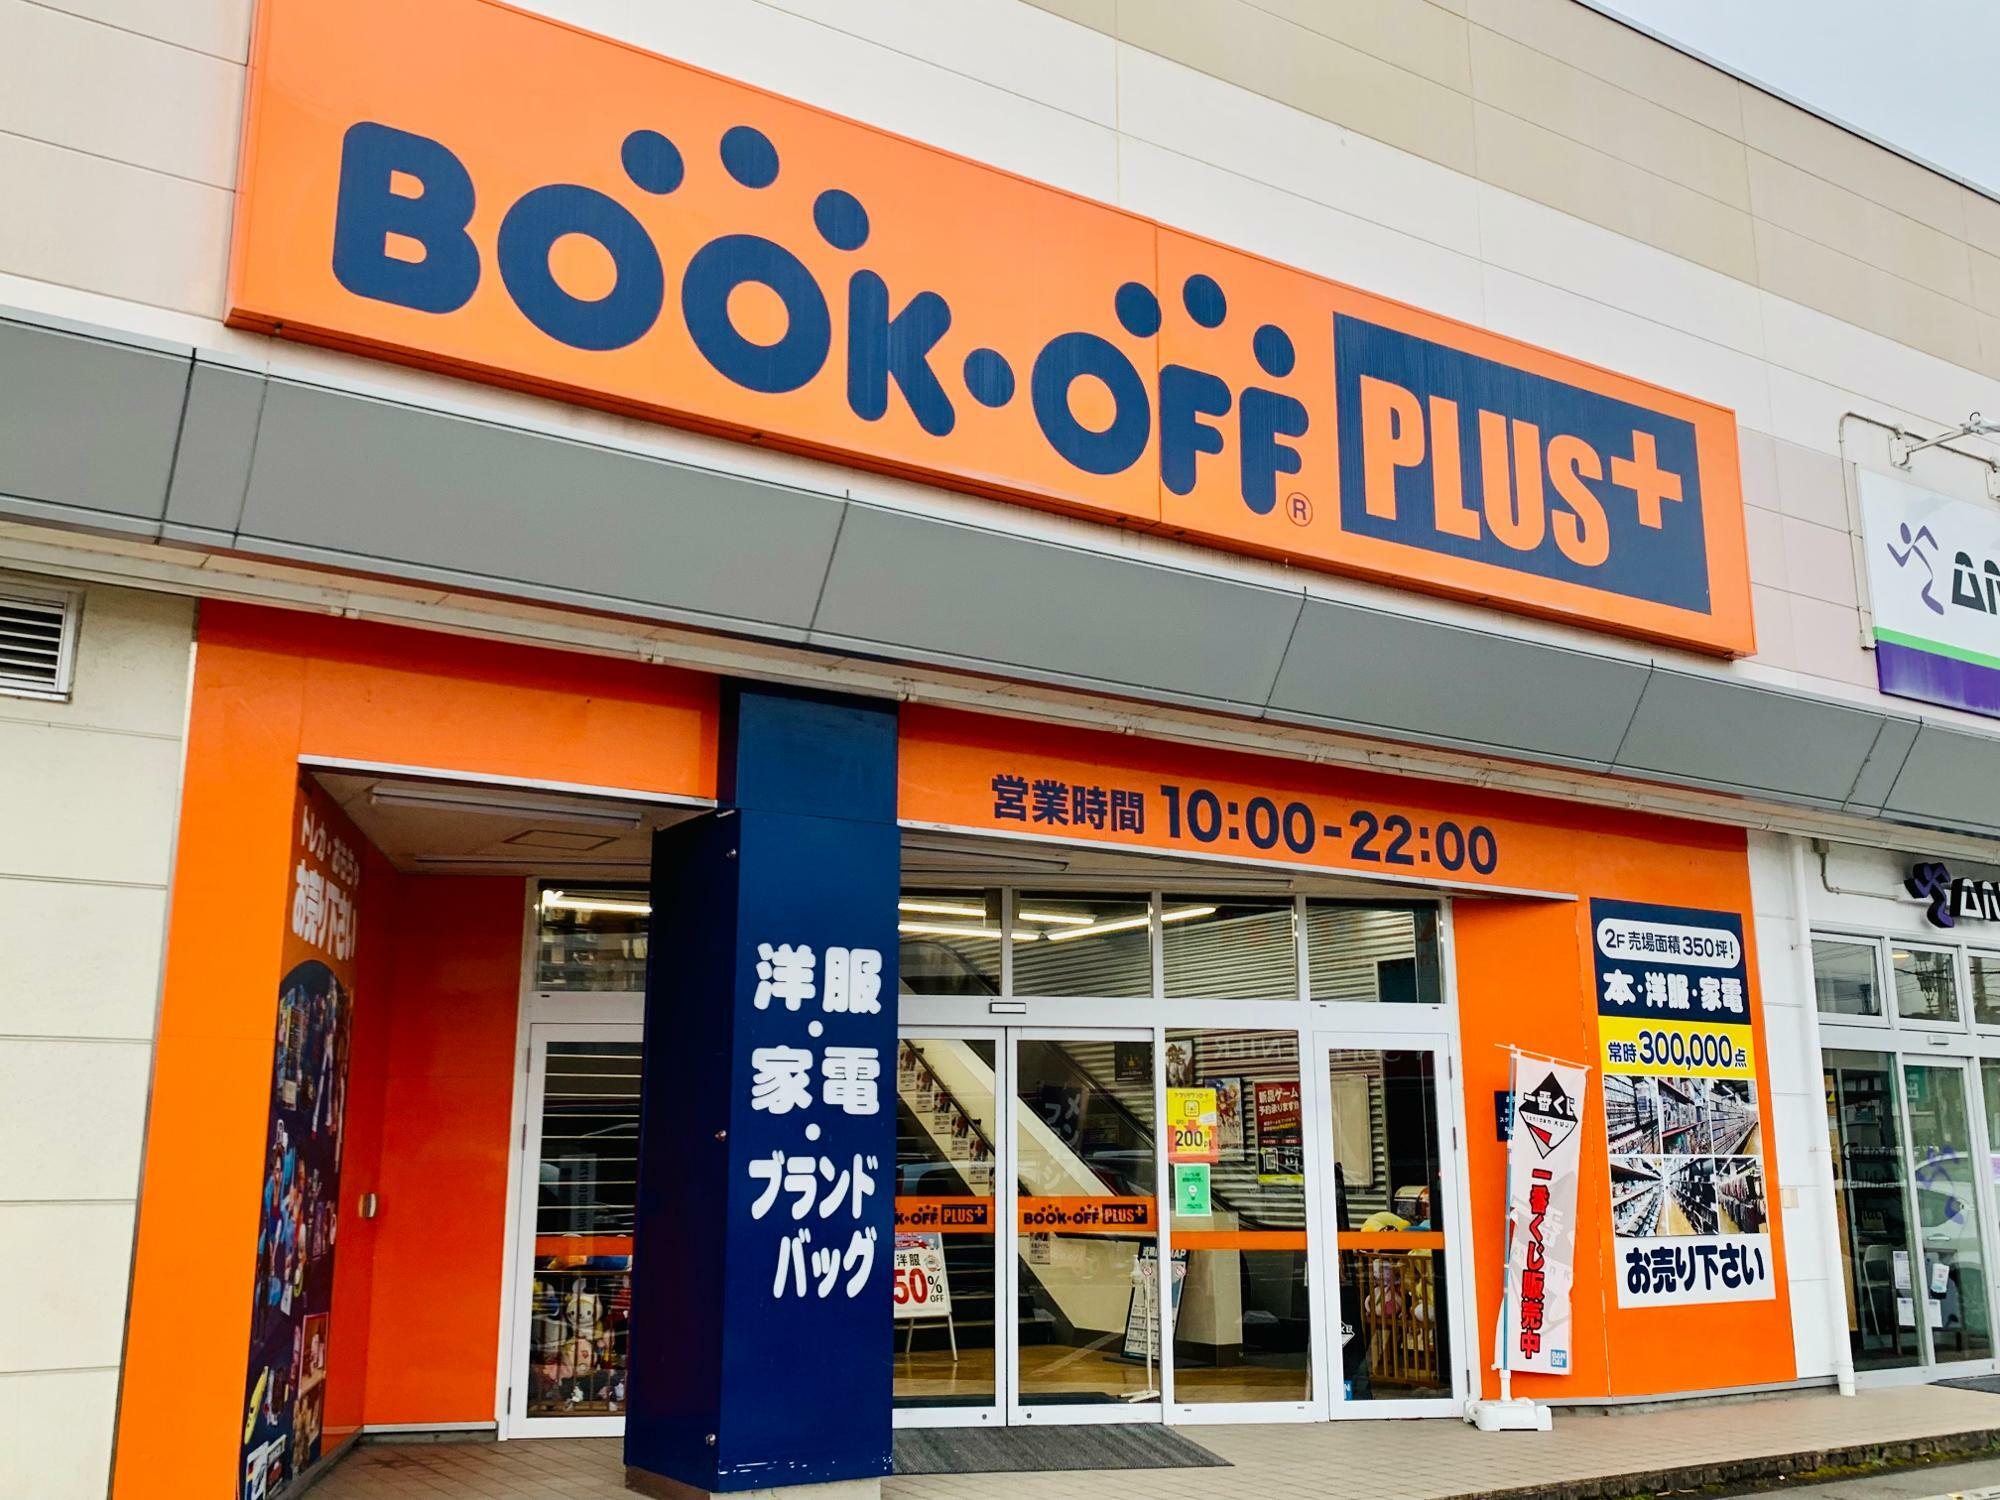 BOOKOFF PLUS 286号仙台鈎取店